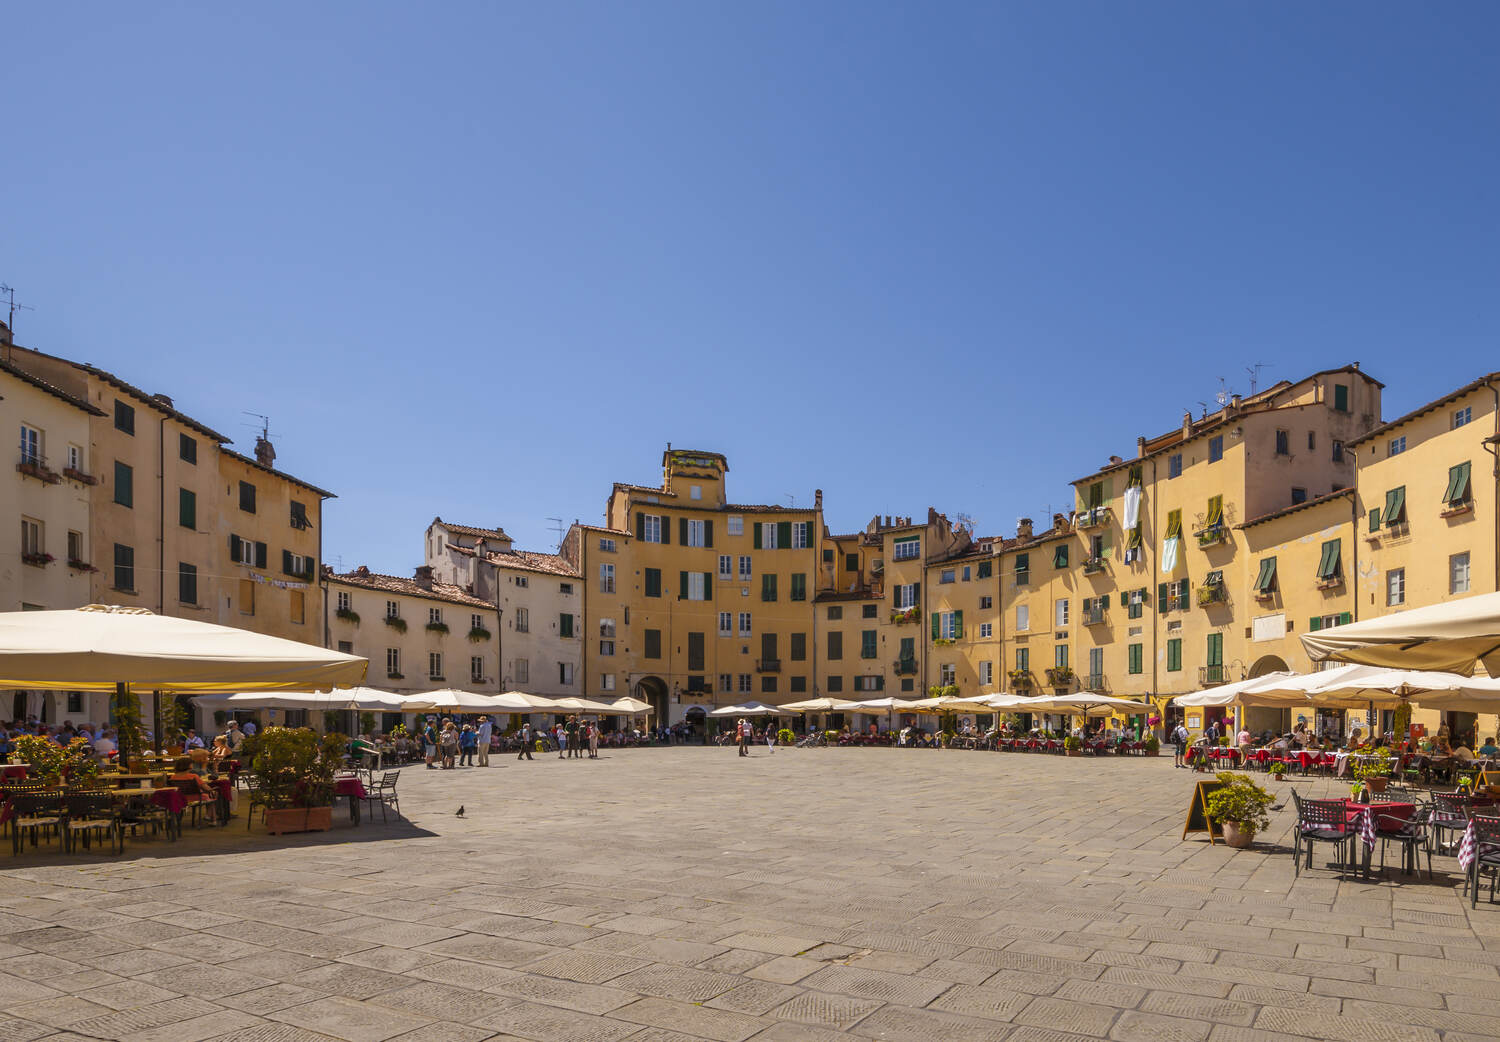 Piazza-dellanfiteatro-in-Lucca